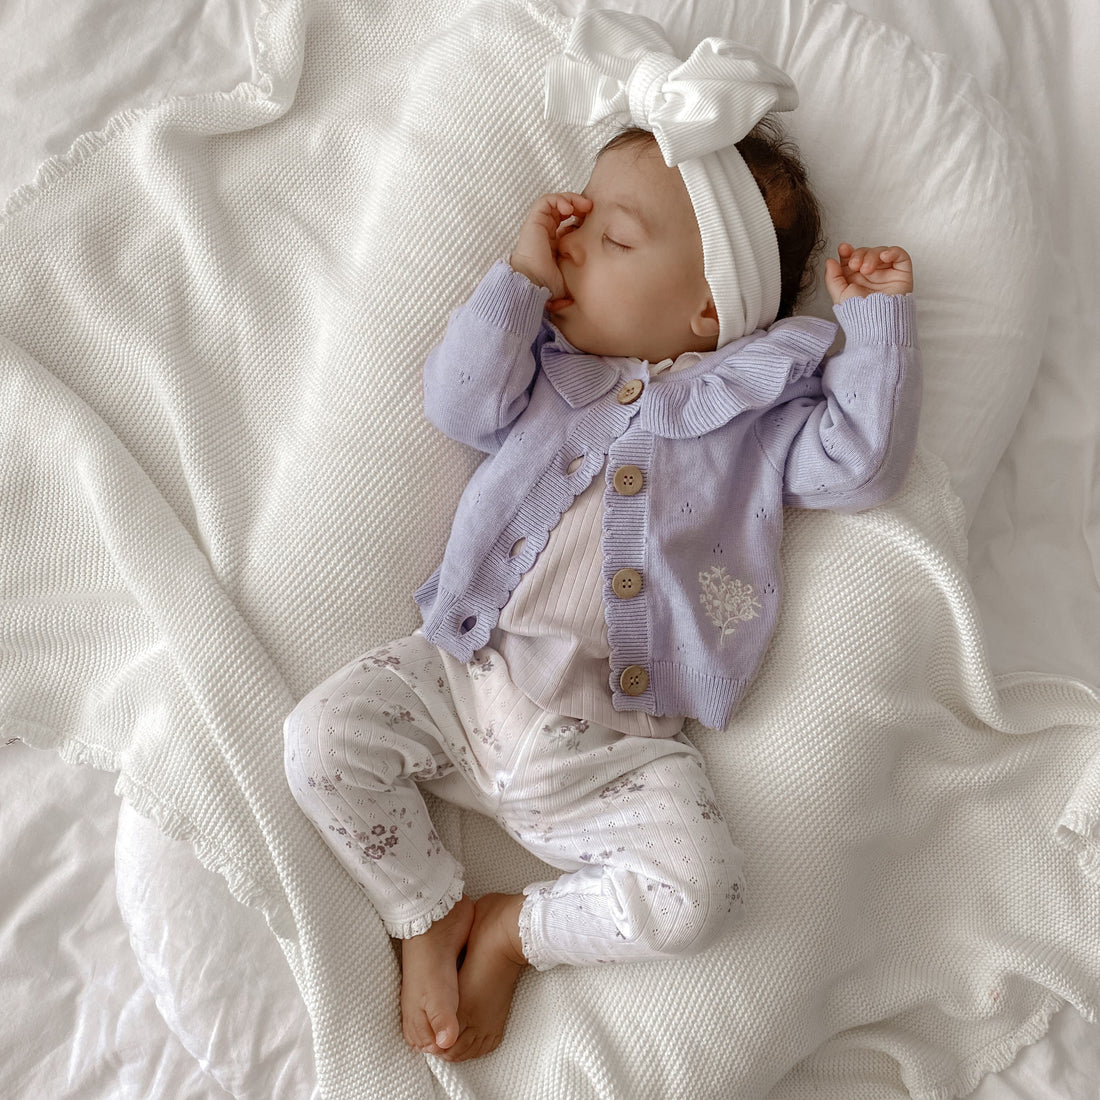 Baby & Toddler Pointelle White Grace Floral Leggings